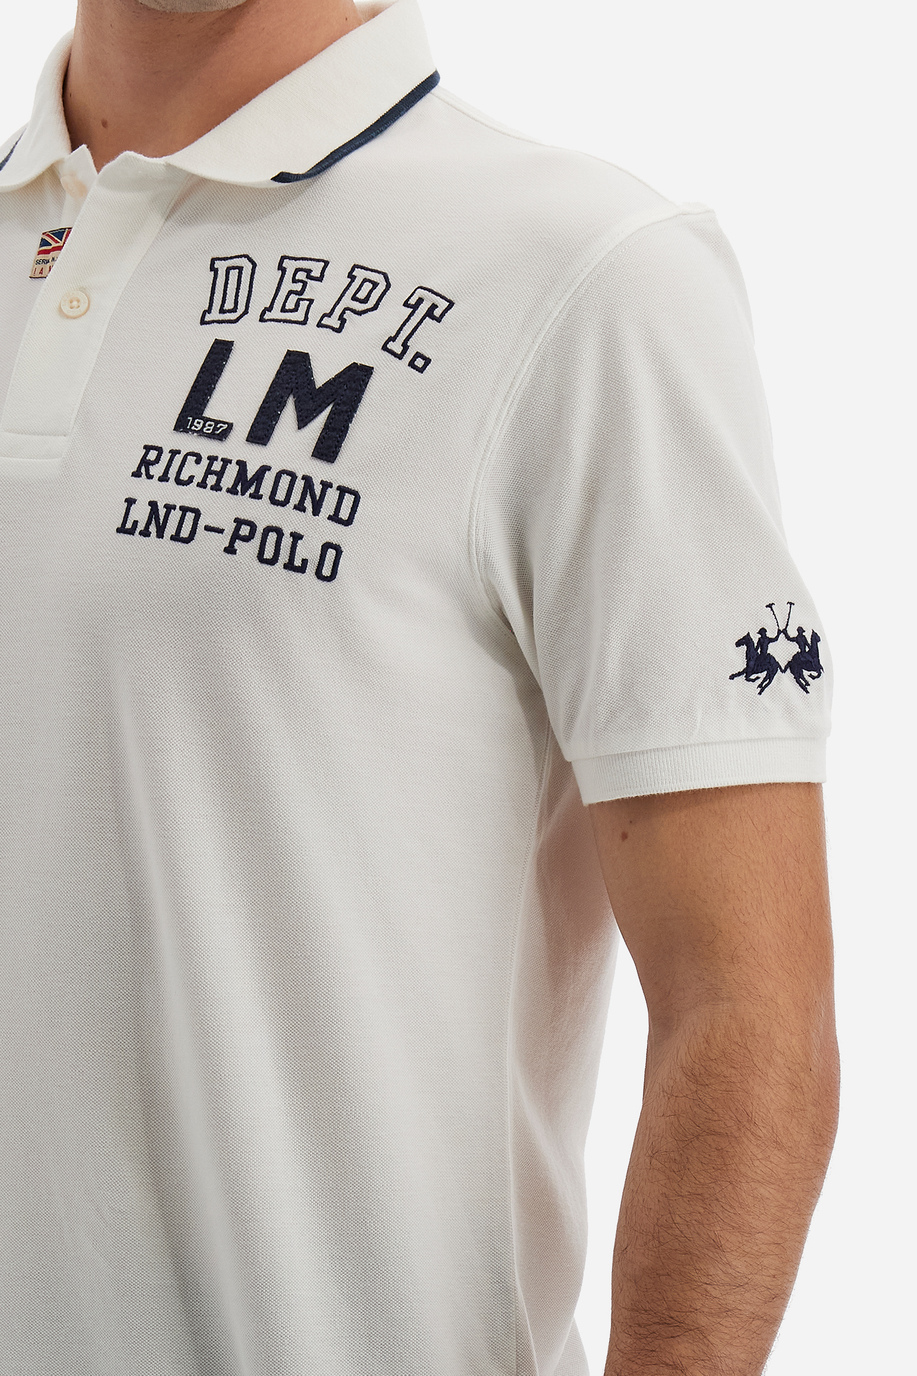 Men's short-sleeved polo shirt Polo Academy solid color small logo on shoulder - Vardon - Polo Shirts | La Martina - Official Online Shop